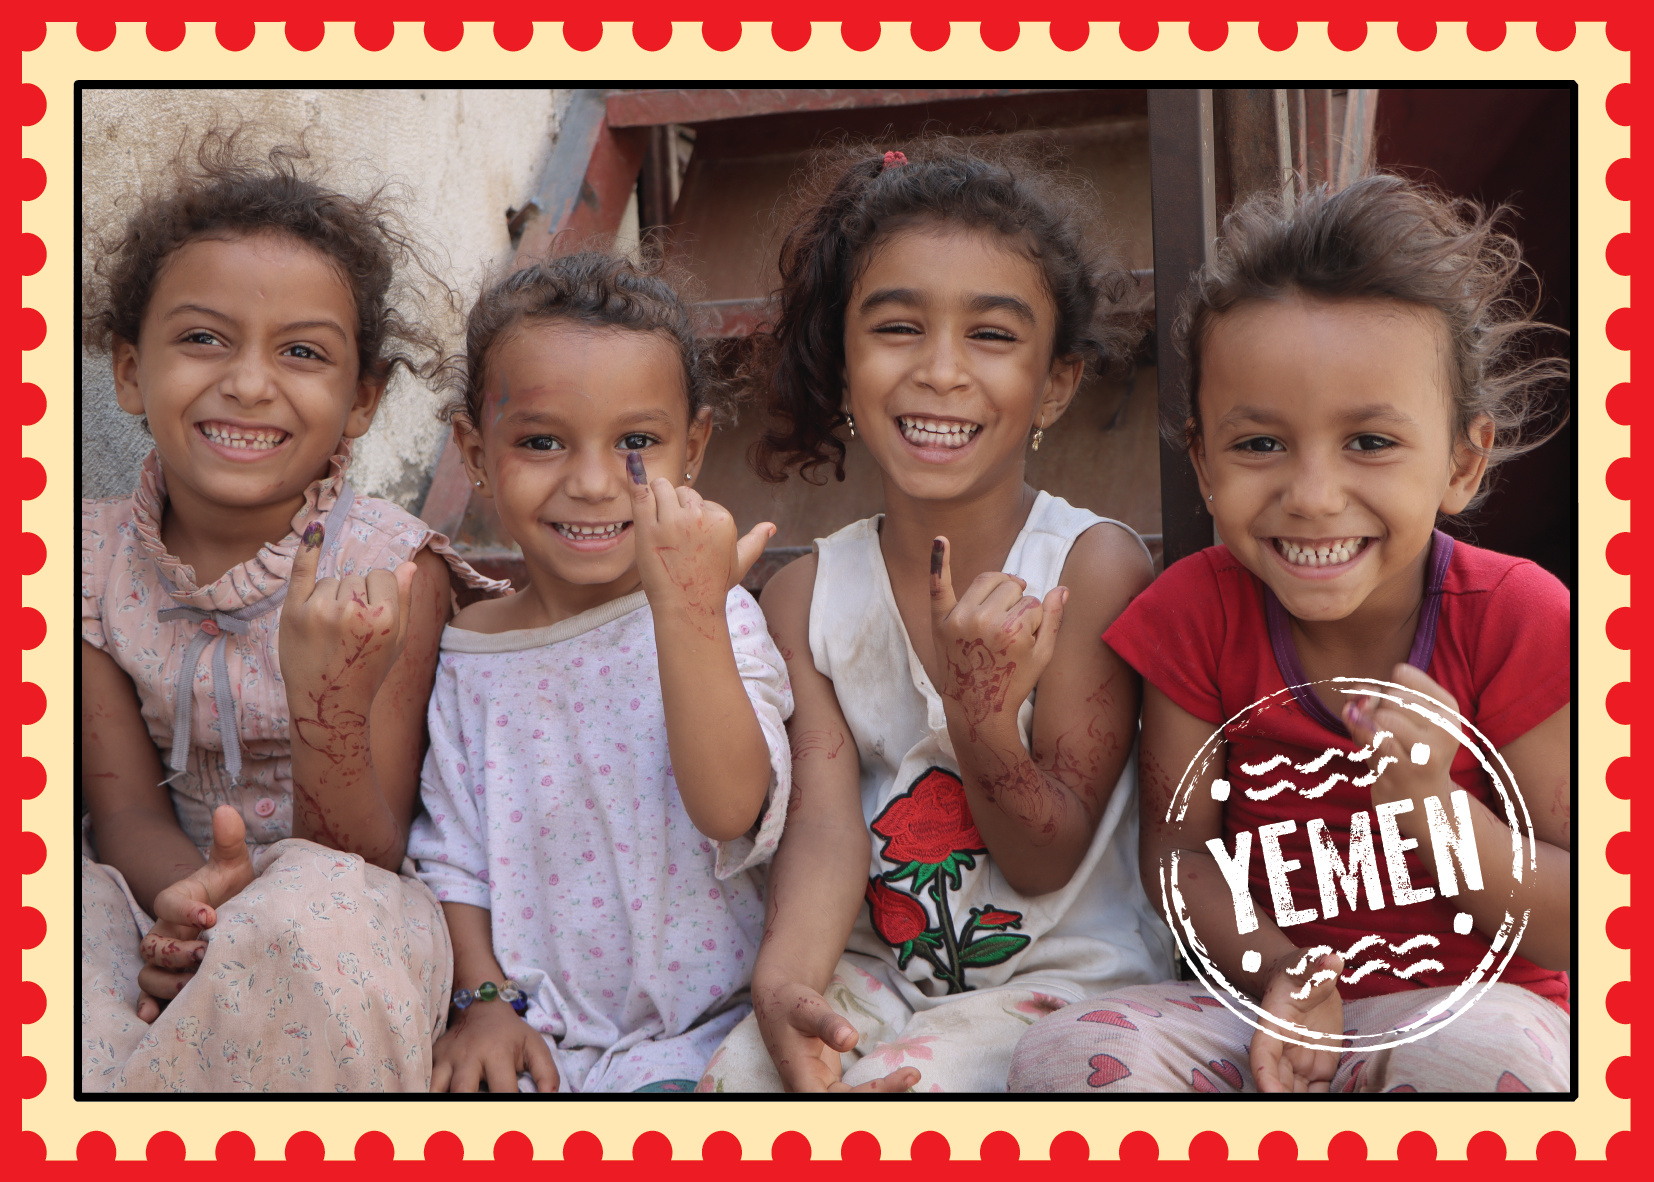 Te comparto esta postal de Yemen, que vive una de las peores crisis humanitarias de los últimos años. Junto a UNICEF llevamos a más de 3.8 millones de niños y niñas su vacuna contra la polio y más de 7.3 millones de personas accedieron a agua potable. En Yemen, #ParaCadaInfancia VACUNAS